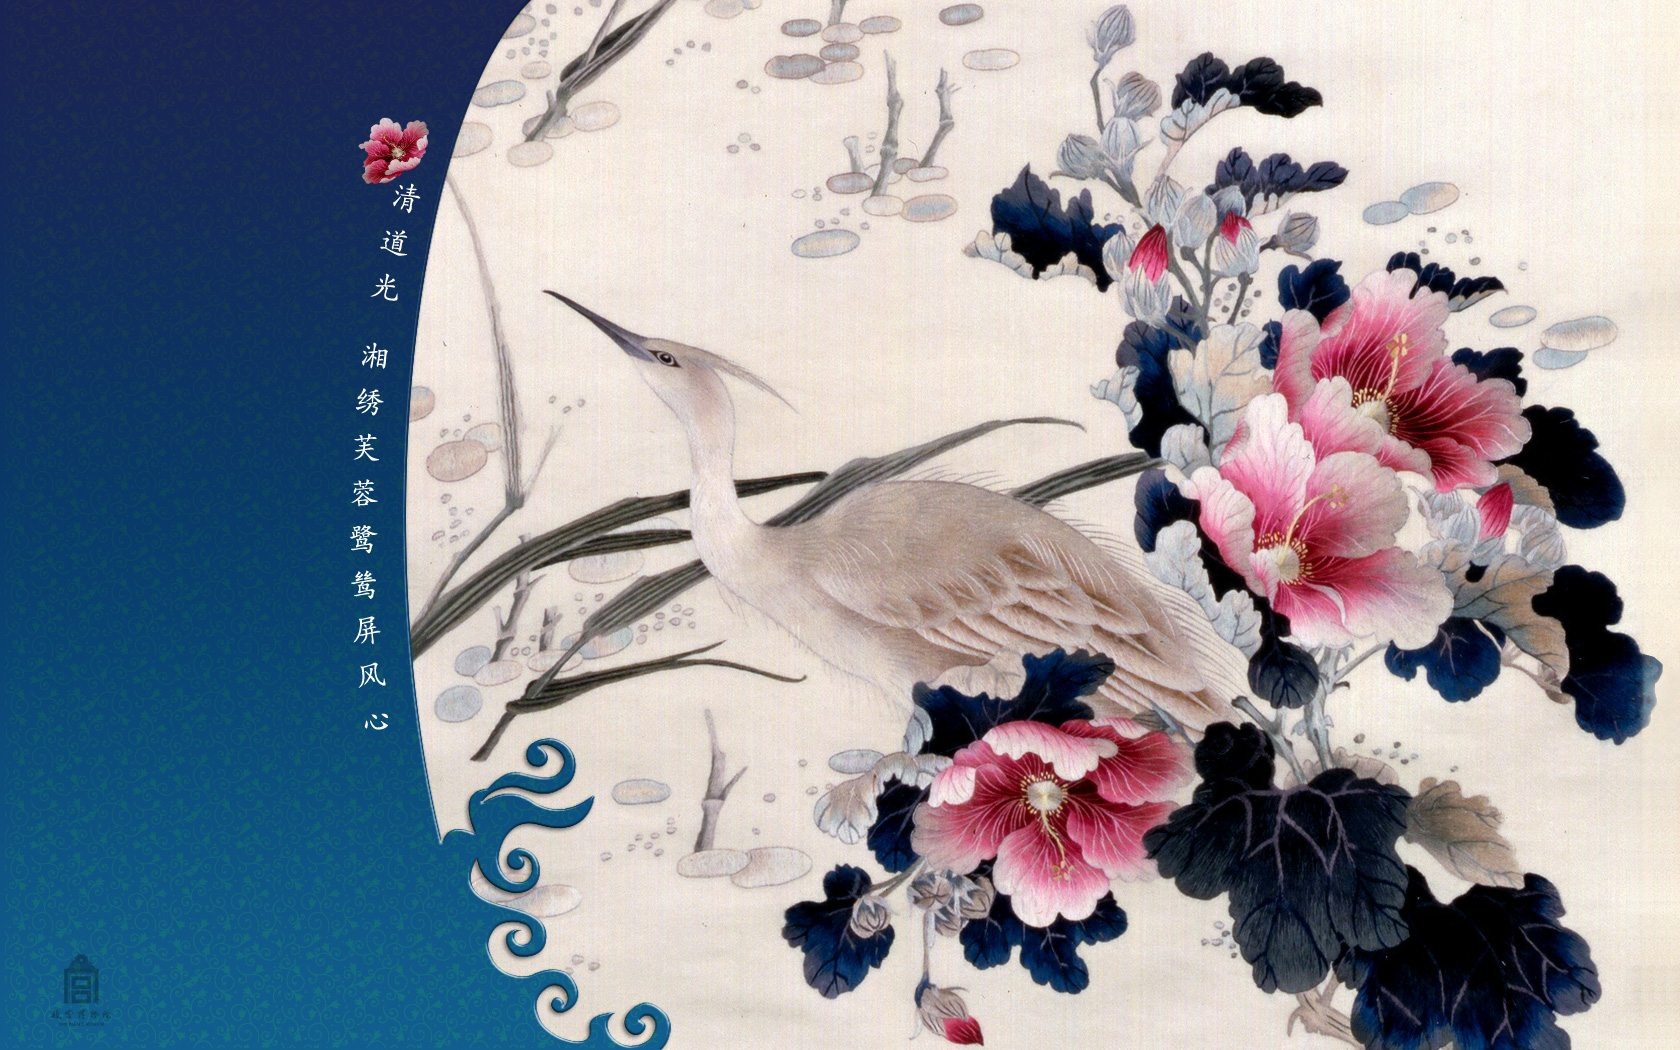 北京故宮博物院 文物展壁紙(二) #23 - 1680x1050